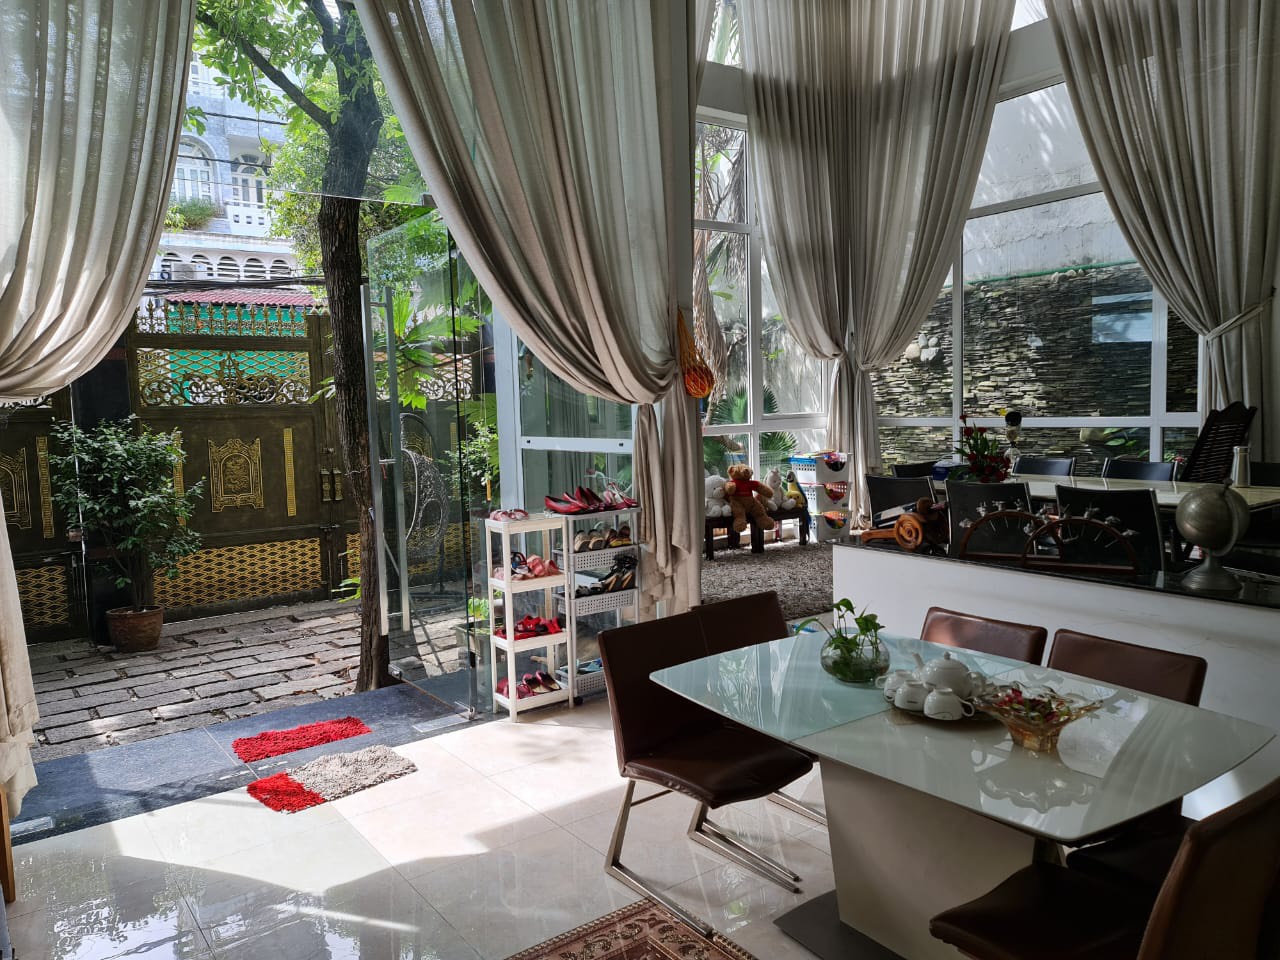 Bán nhà mặt tiền nội bộ đường Thạch Lam, 12x16m, 1 Lửng 2 Lầu sân thượng